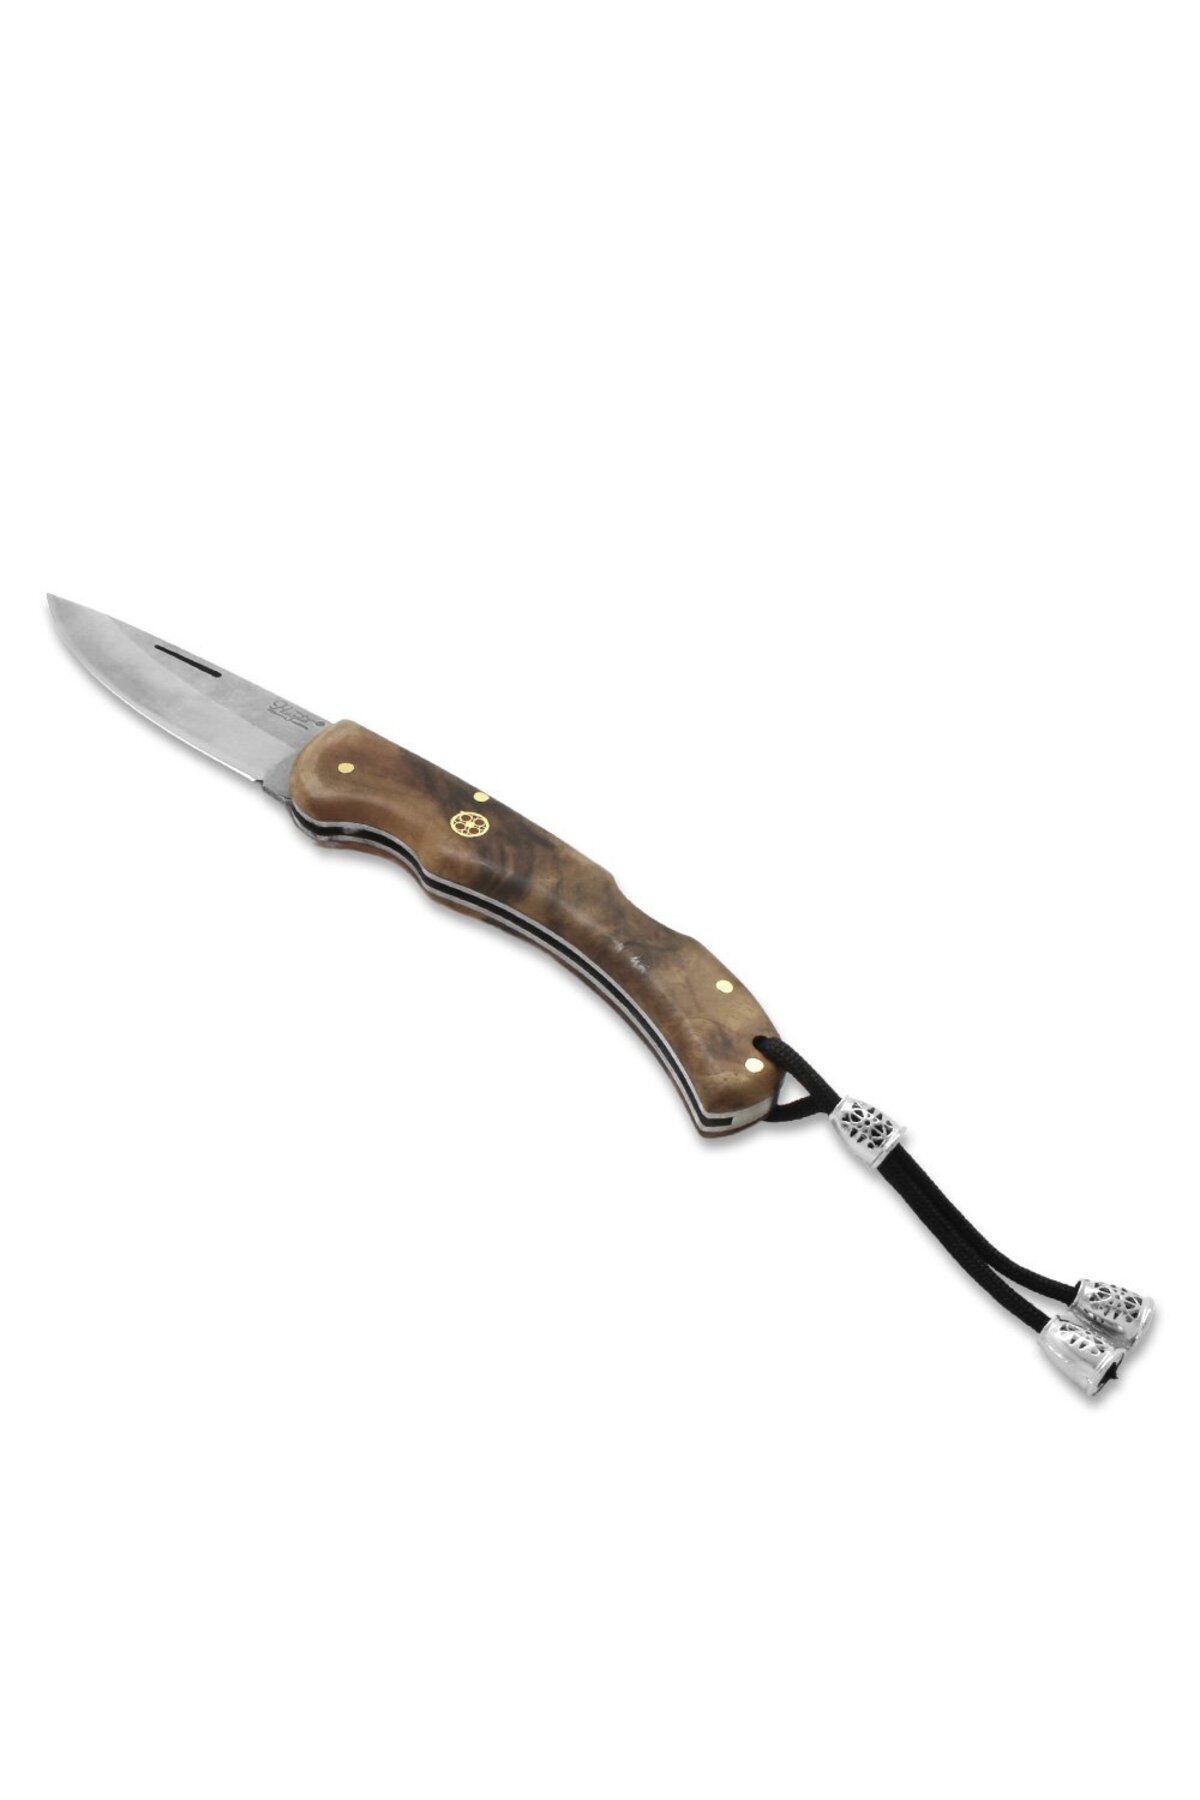 Tesbihane Kök Ceviz Ağacı Büyük Boy Hayta Model 4116 Karartılmış Çelik Avcı/Kamp Bıçağı